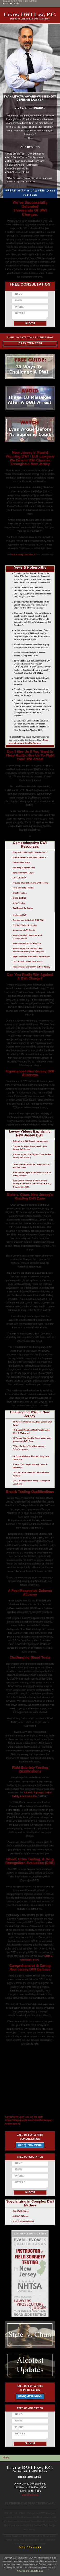 Levow DWI Law - Cherry Hill NJ Lawyers